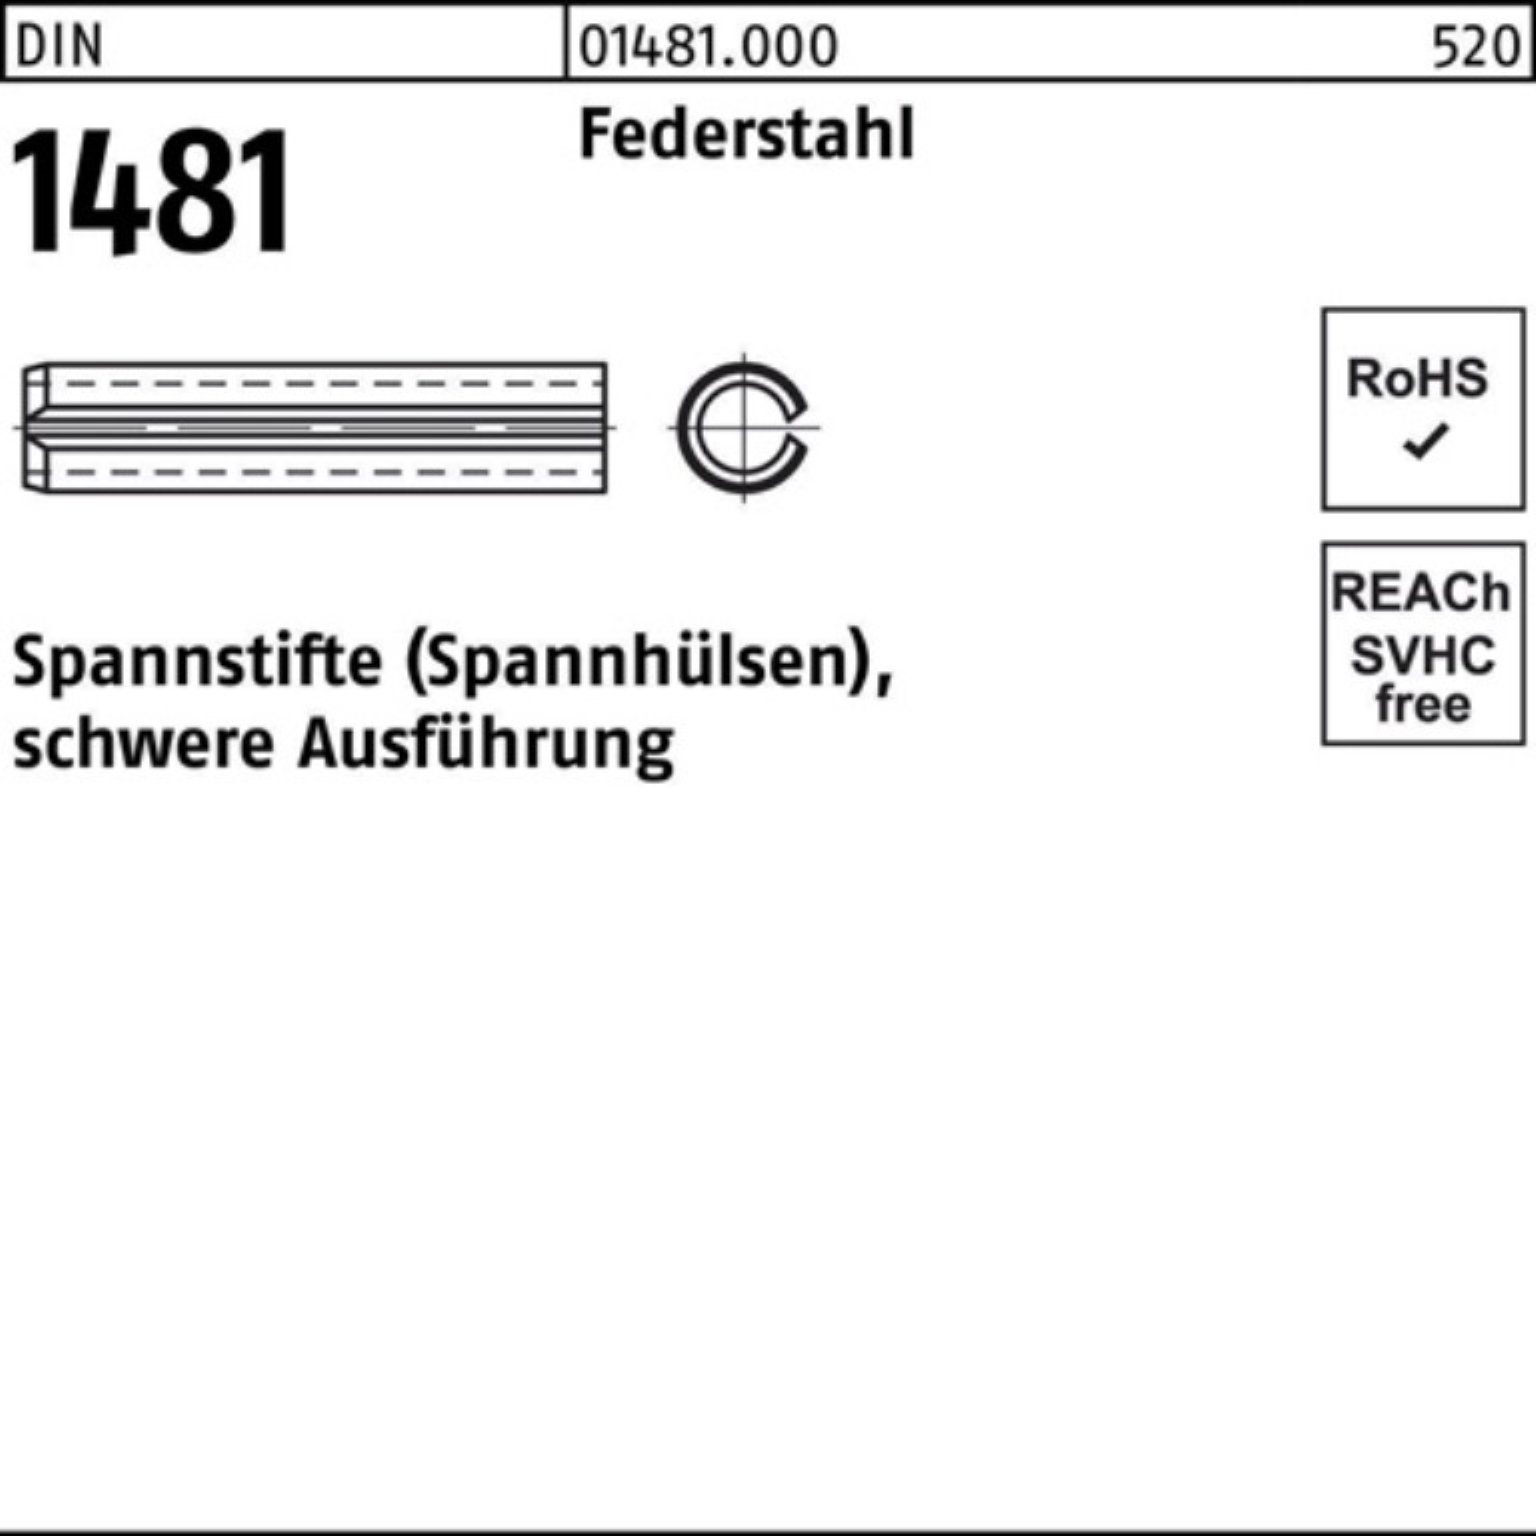 Reyher Spannstift Spannstift Ausführung 100er schwere DIN Pack 18x 1481 Federstahl 2 55